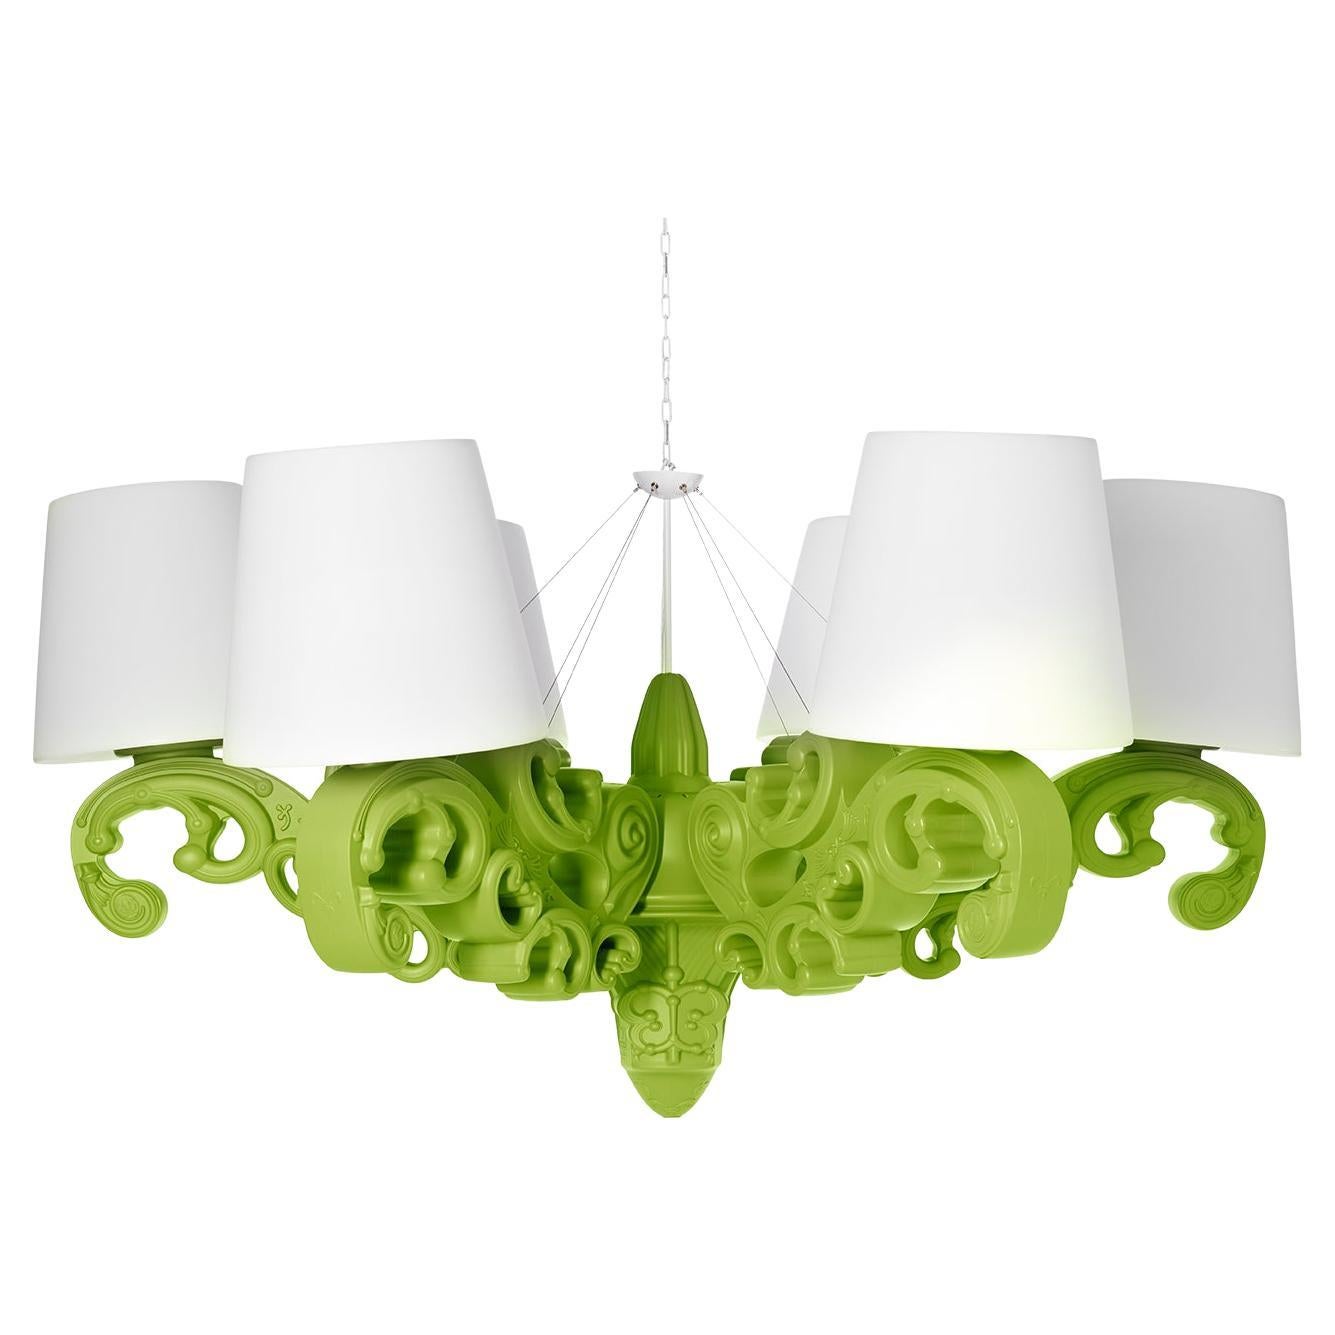 Lampe à suspension couronne d'amour en vert citron, design Slide Design de Moro, Pigatti